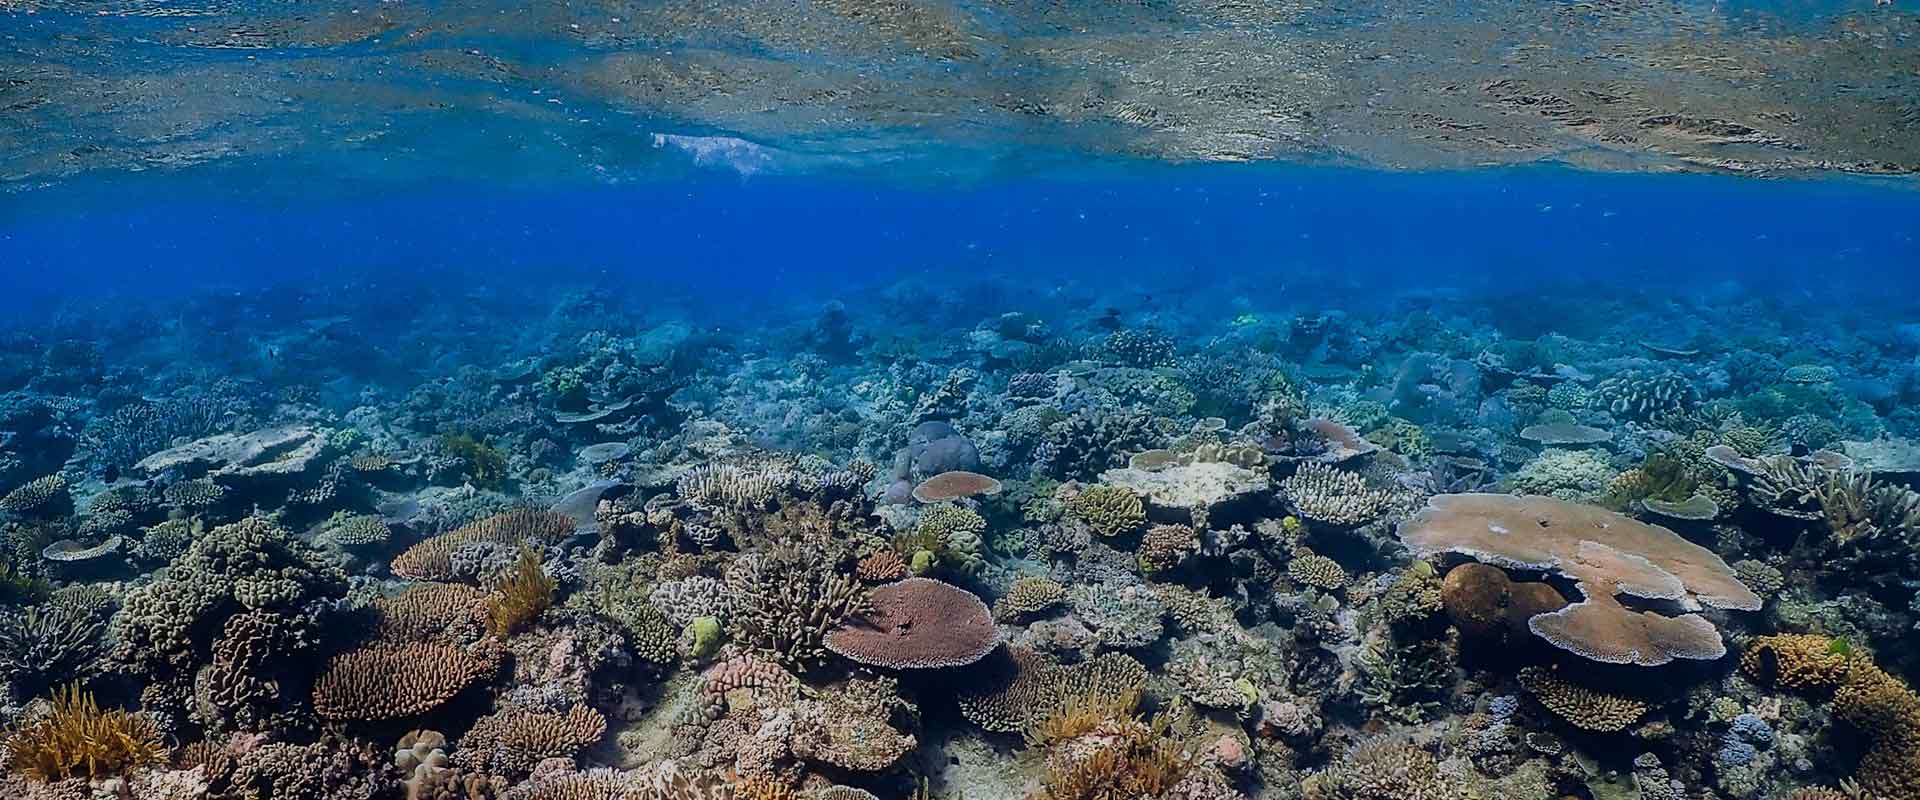 Corals under Sea - Cairn - Australia